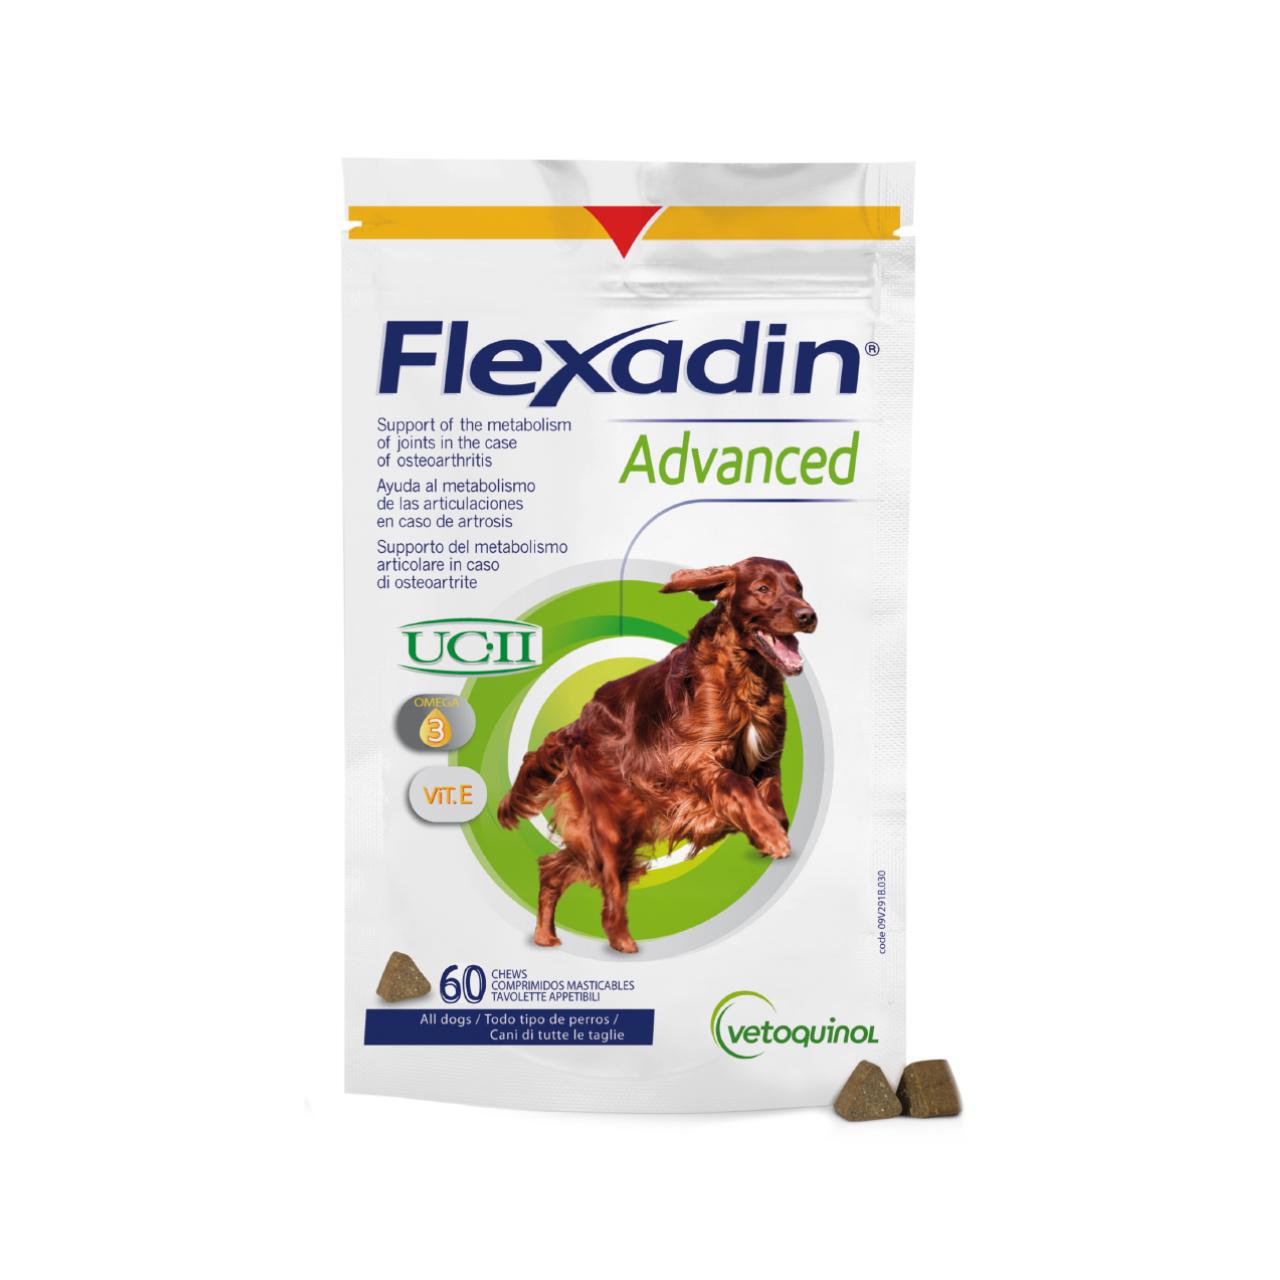 Flexadin Advance Chew Tablet for Dogs